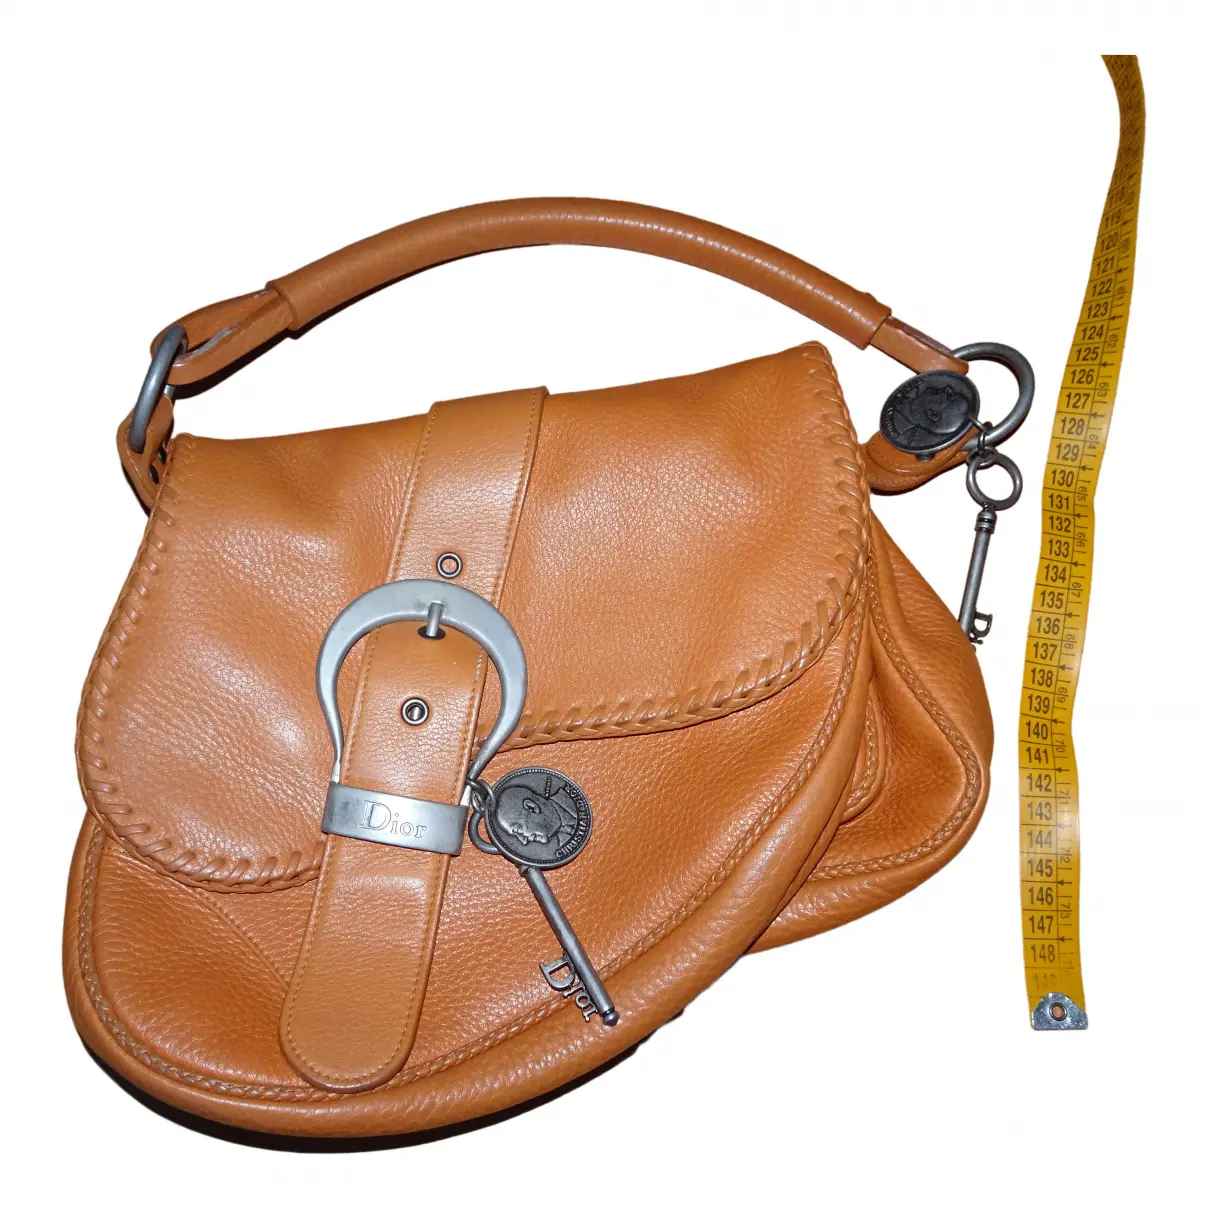 Leather handbag Christian Dior